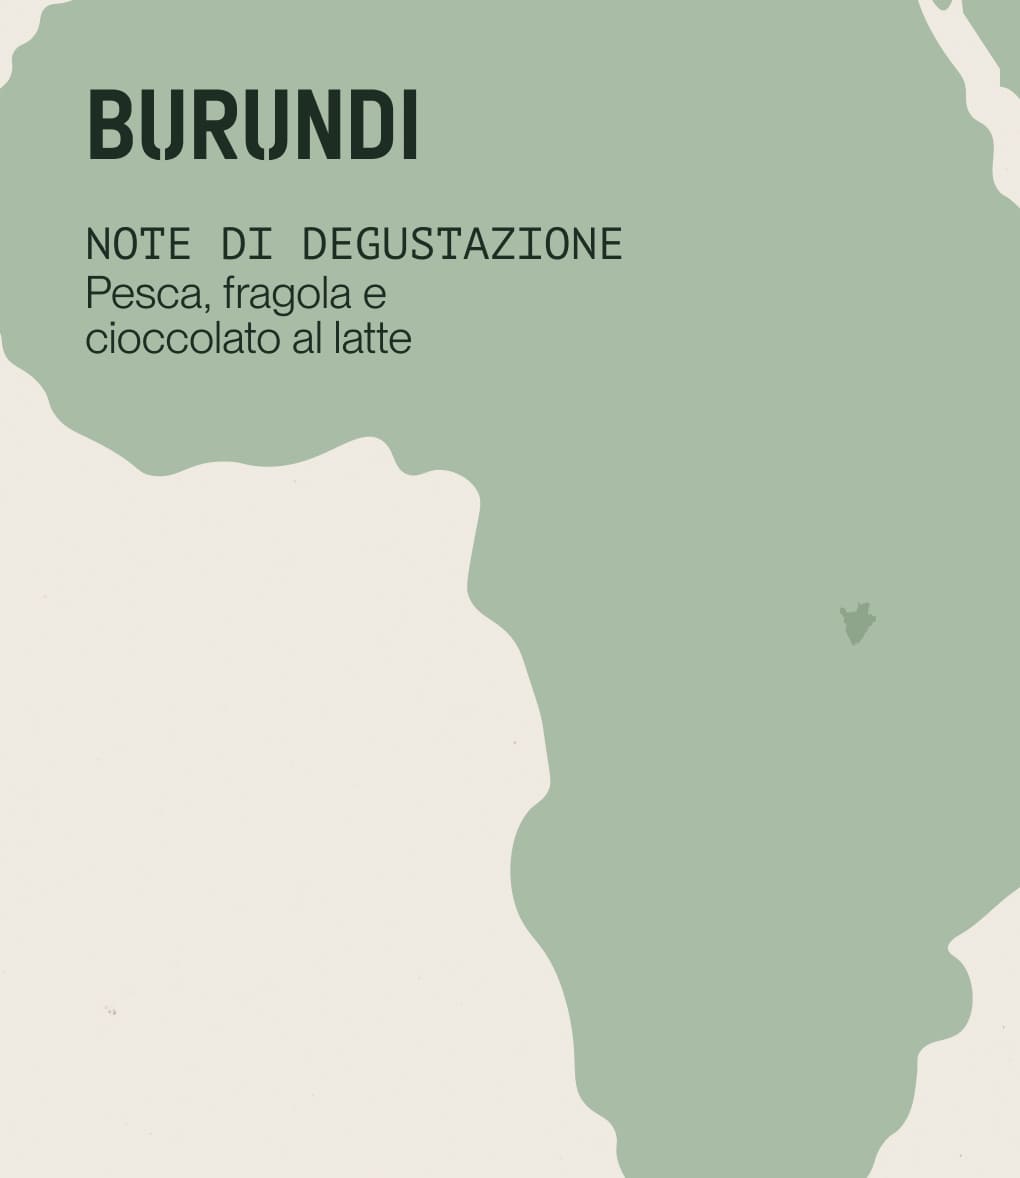 Note di degustazione di caffè di specialità proveniente dal Burundi